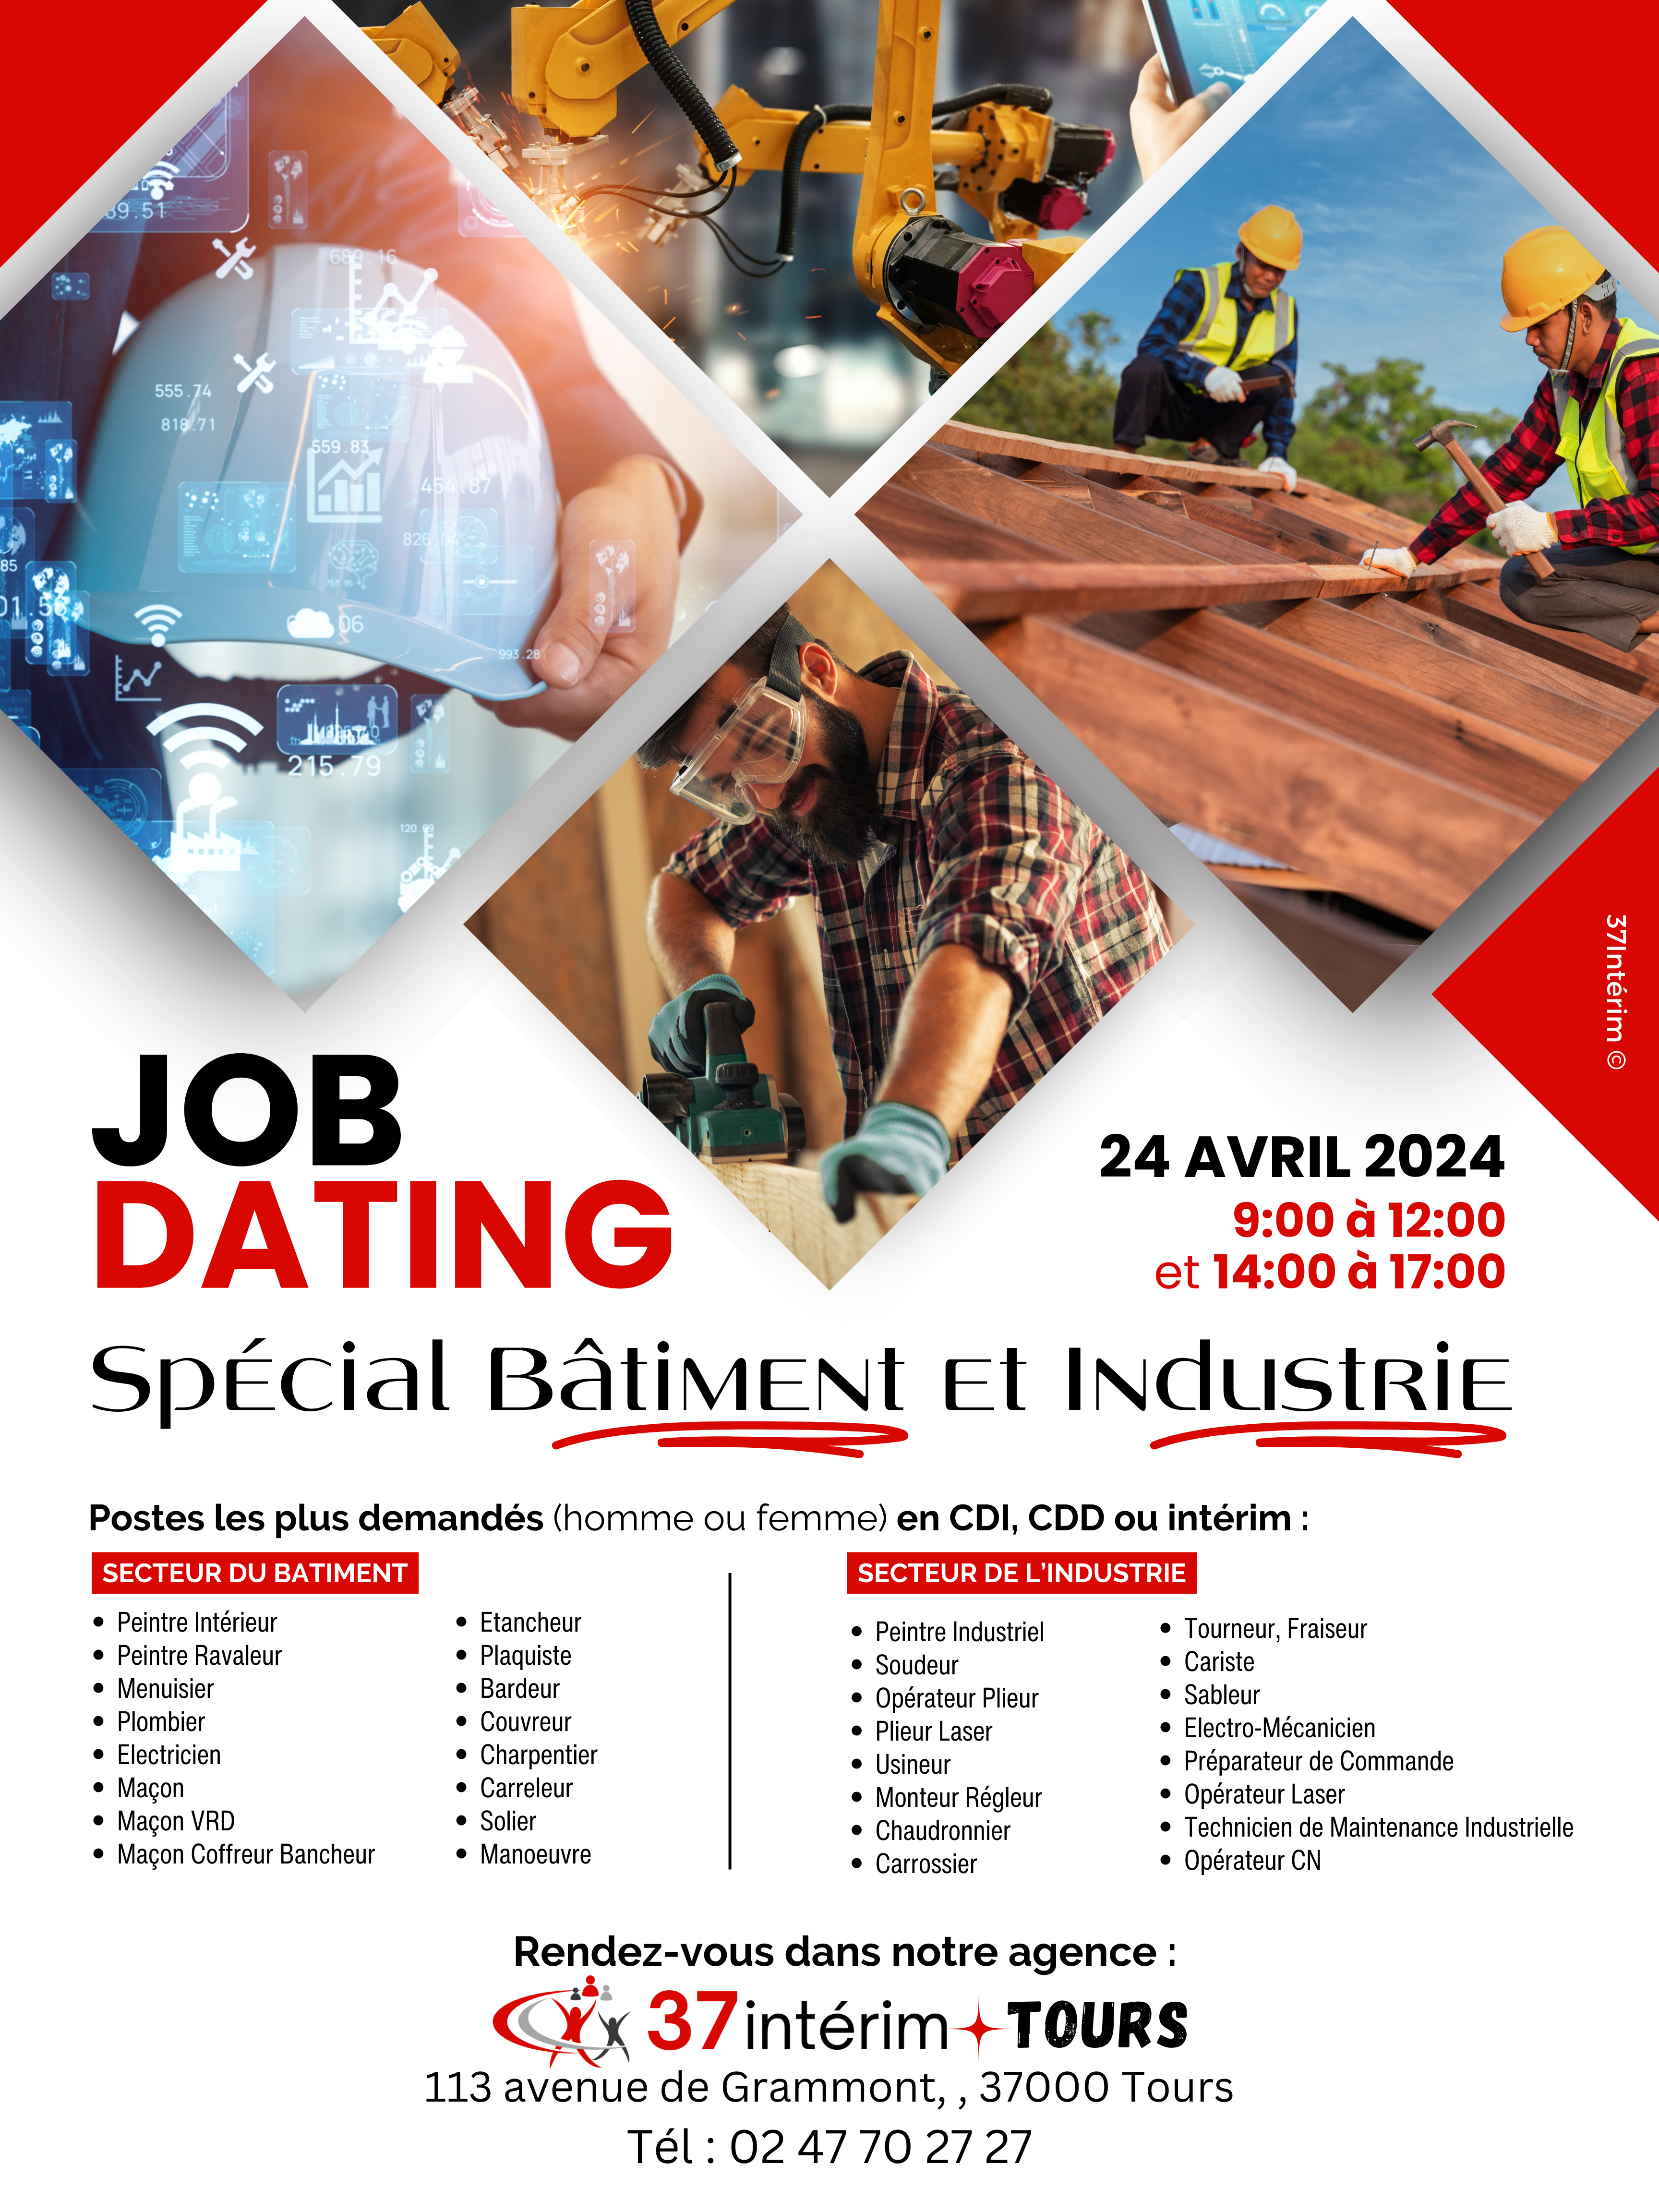 24 avril : Job dating Bâtiment et Industrie